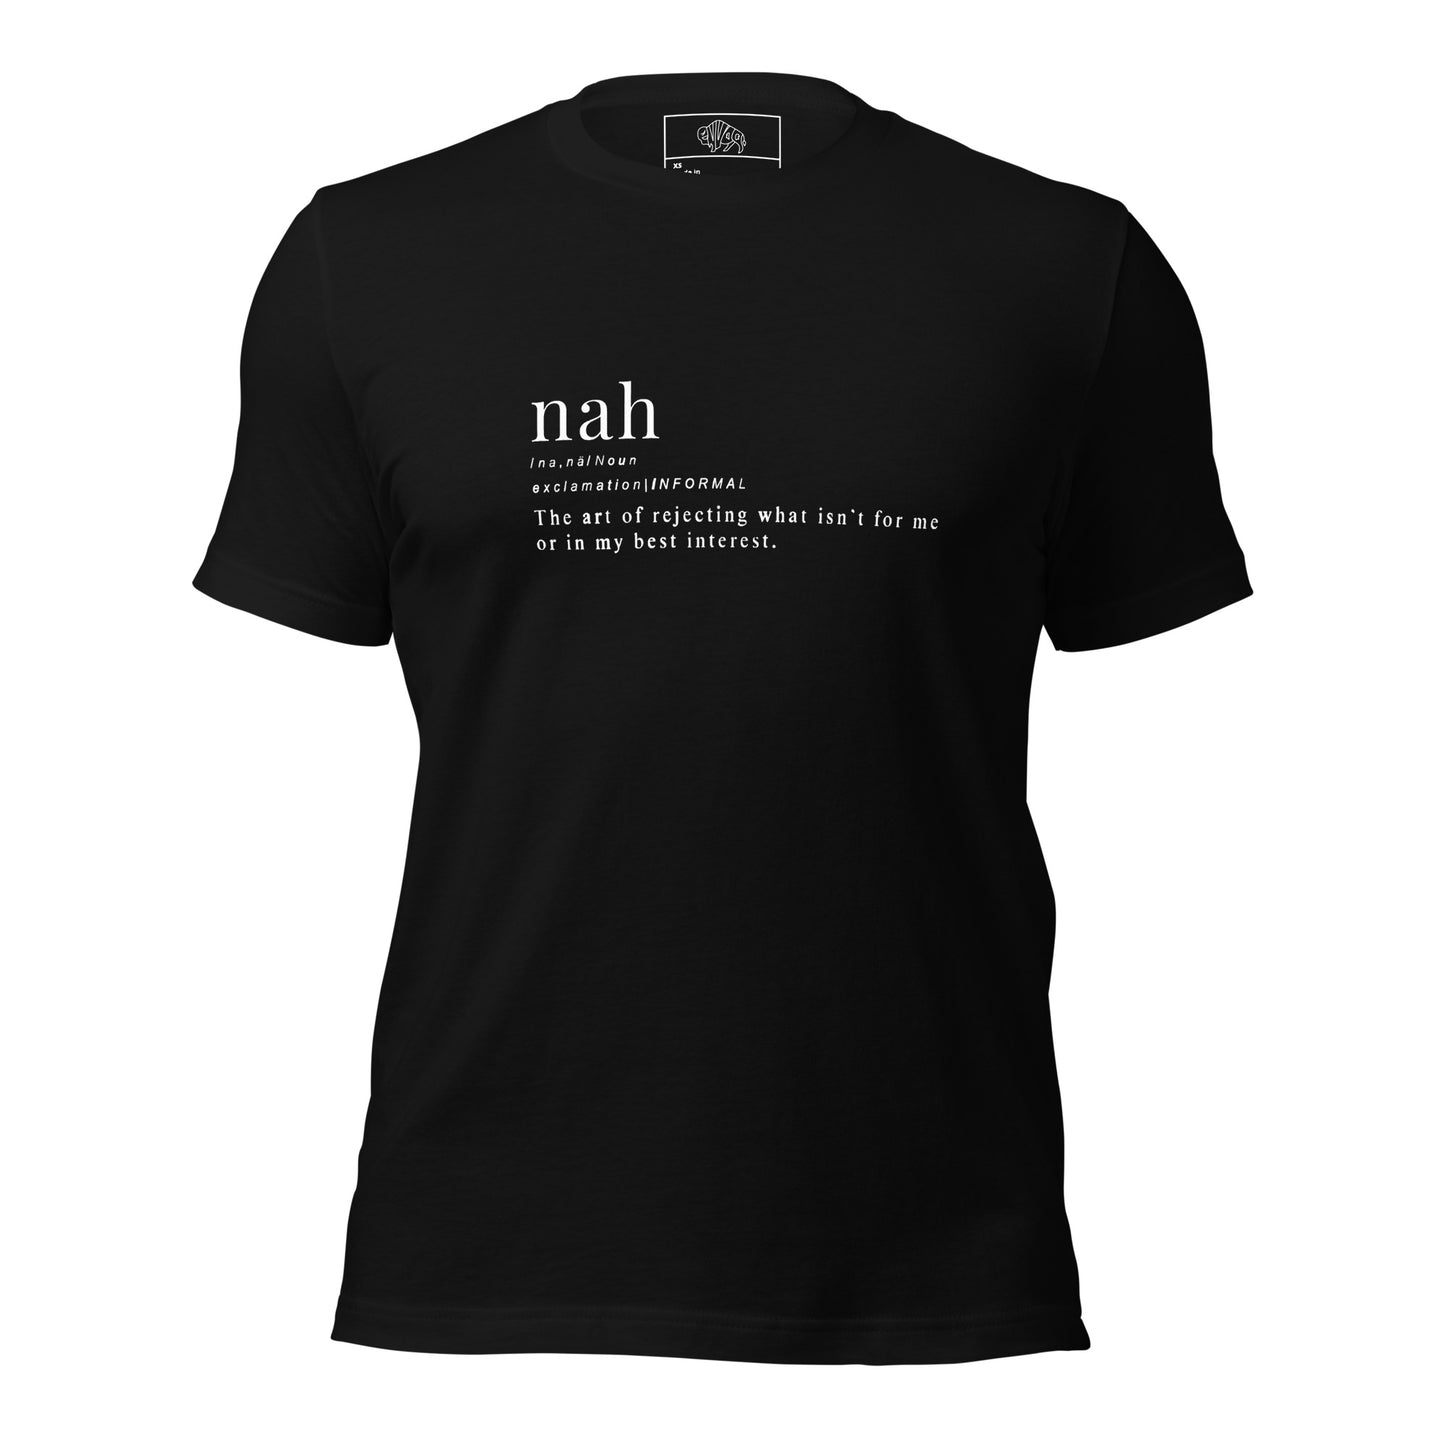 Nah t-shirt